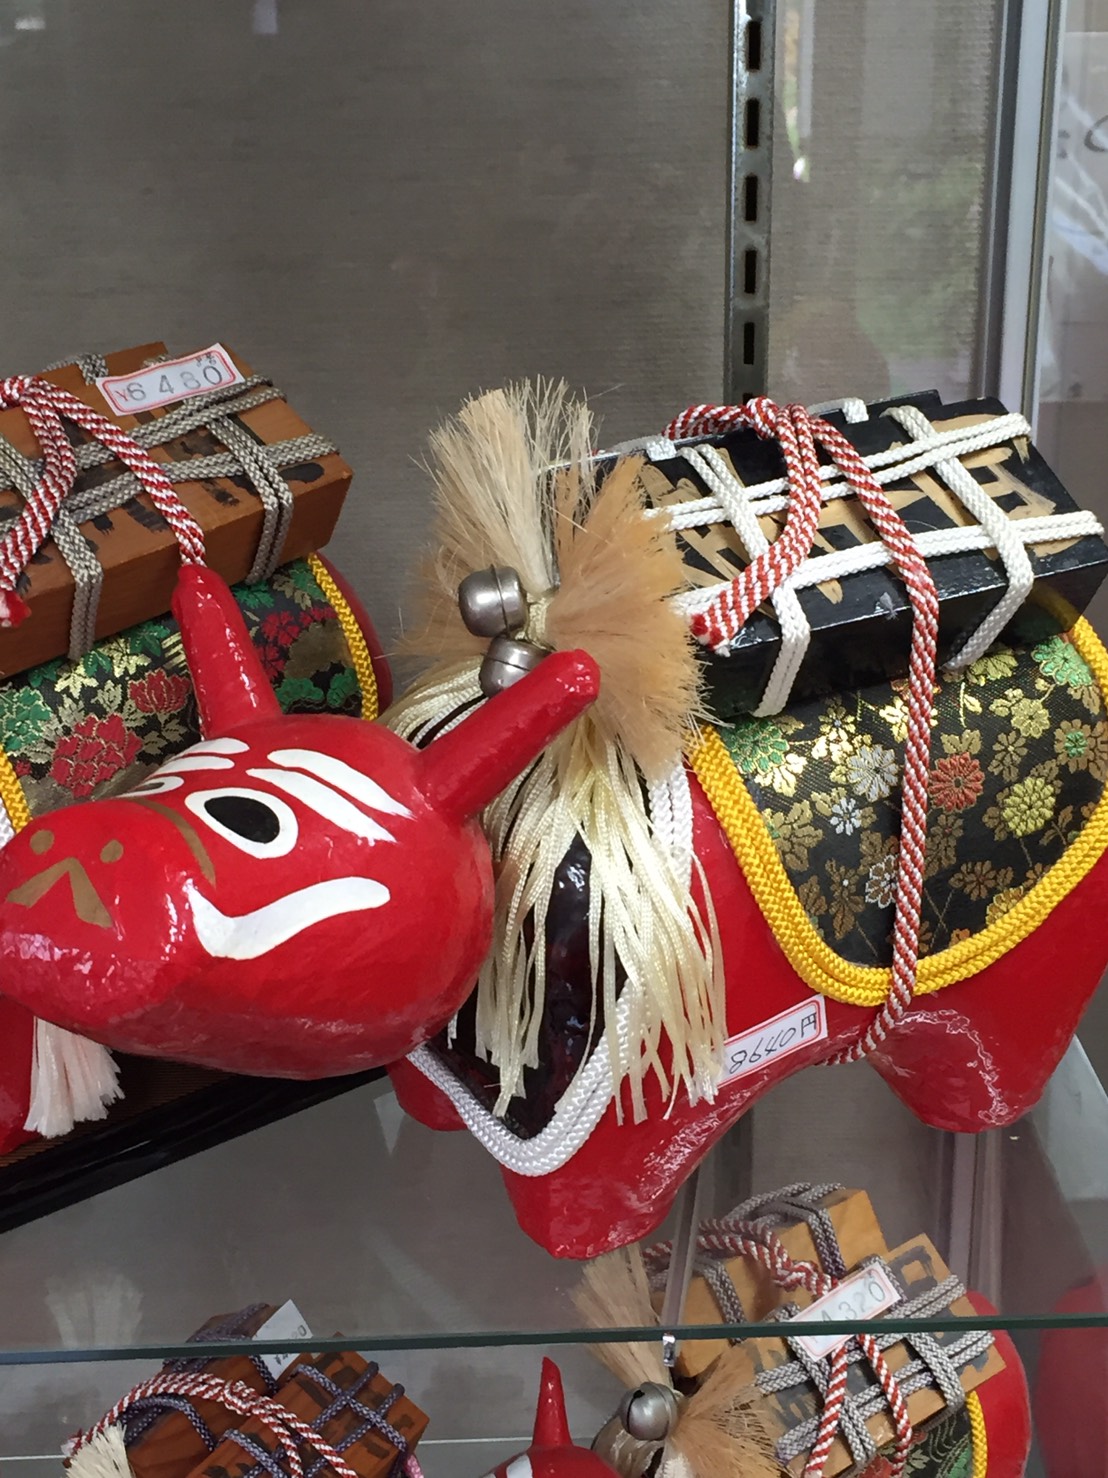 会津若松市「番匠」で赤べこ作り体験をしてきました。 tohoku365